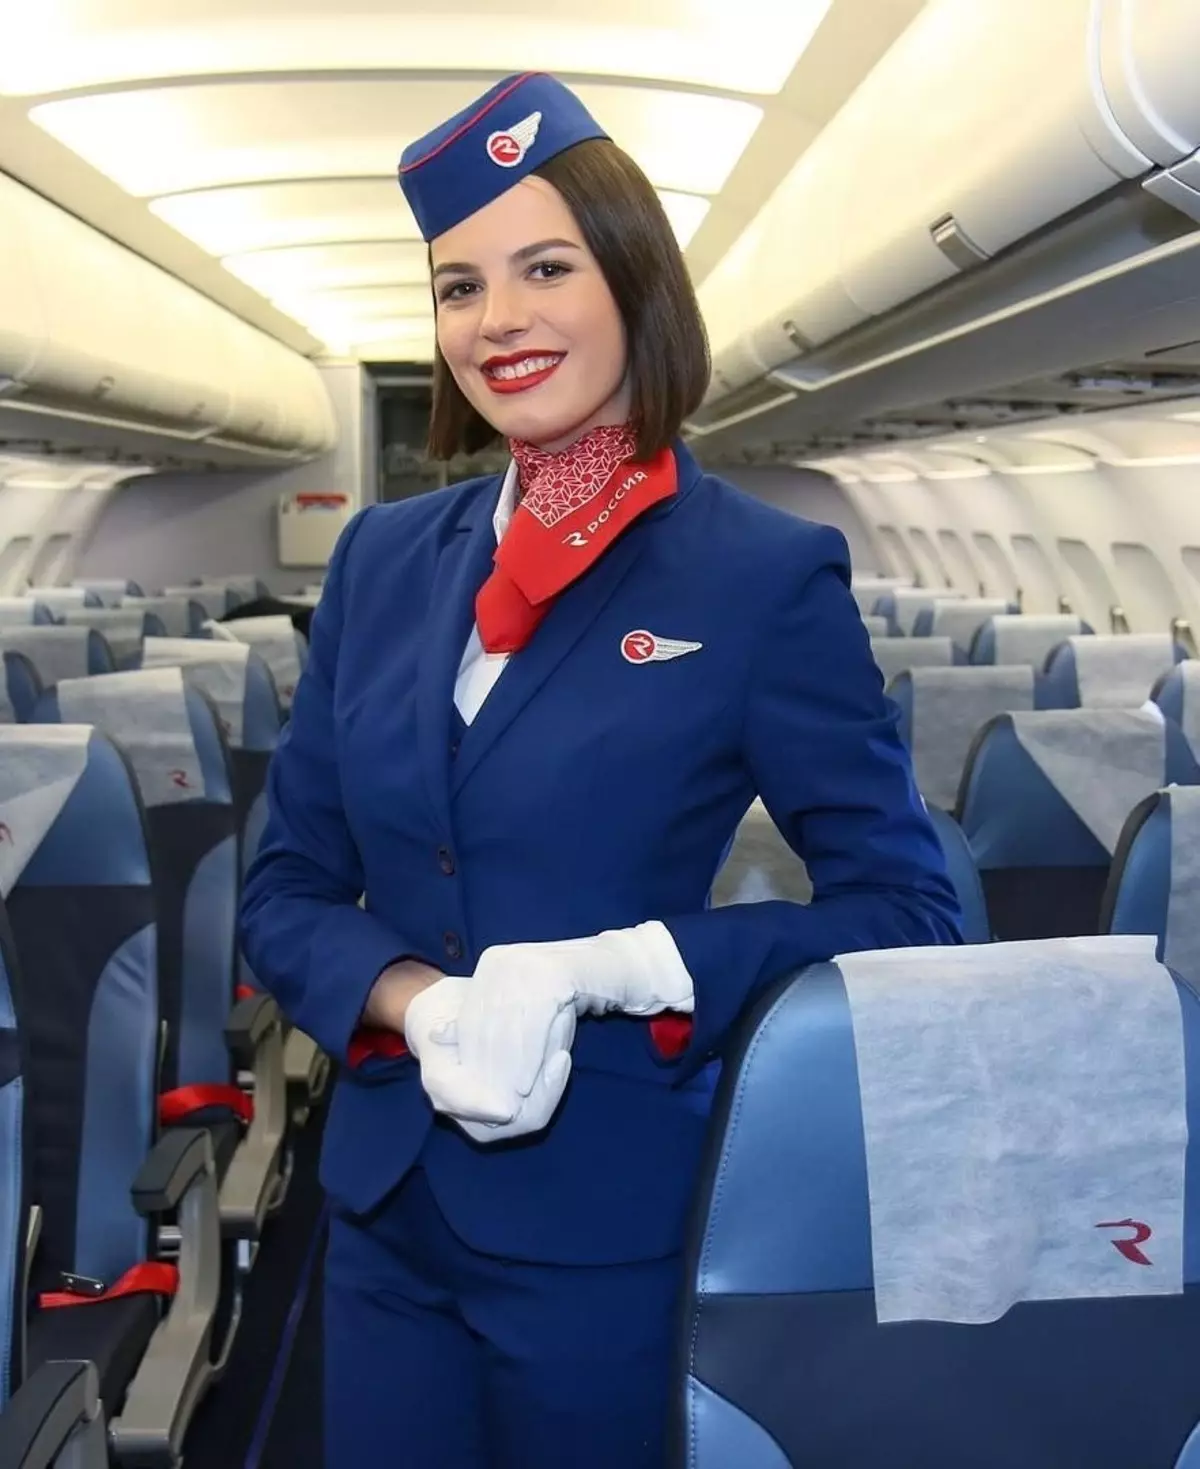 Ձեւավորել է թռիչքի attendants եւ թռիչքի attendants (48 լուսանկար) համազգեստի տարբեր ավիաընկերությունների է աշխարհում. Առավել գեղեցիկ տղամարդկանց եւ կանանց հագուստ է Աէրոֆլոտ Ռուսաստանի. Ինչն է այն դարձնում: 7332_13